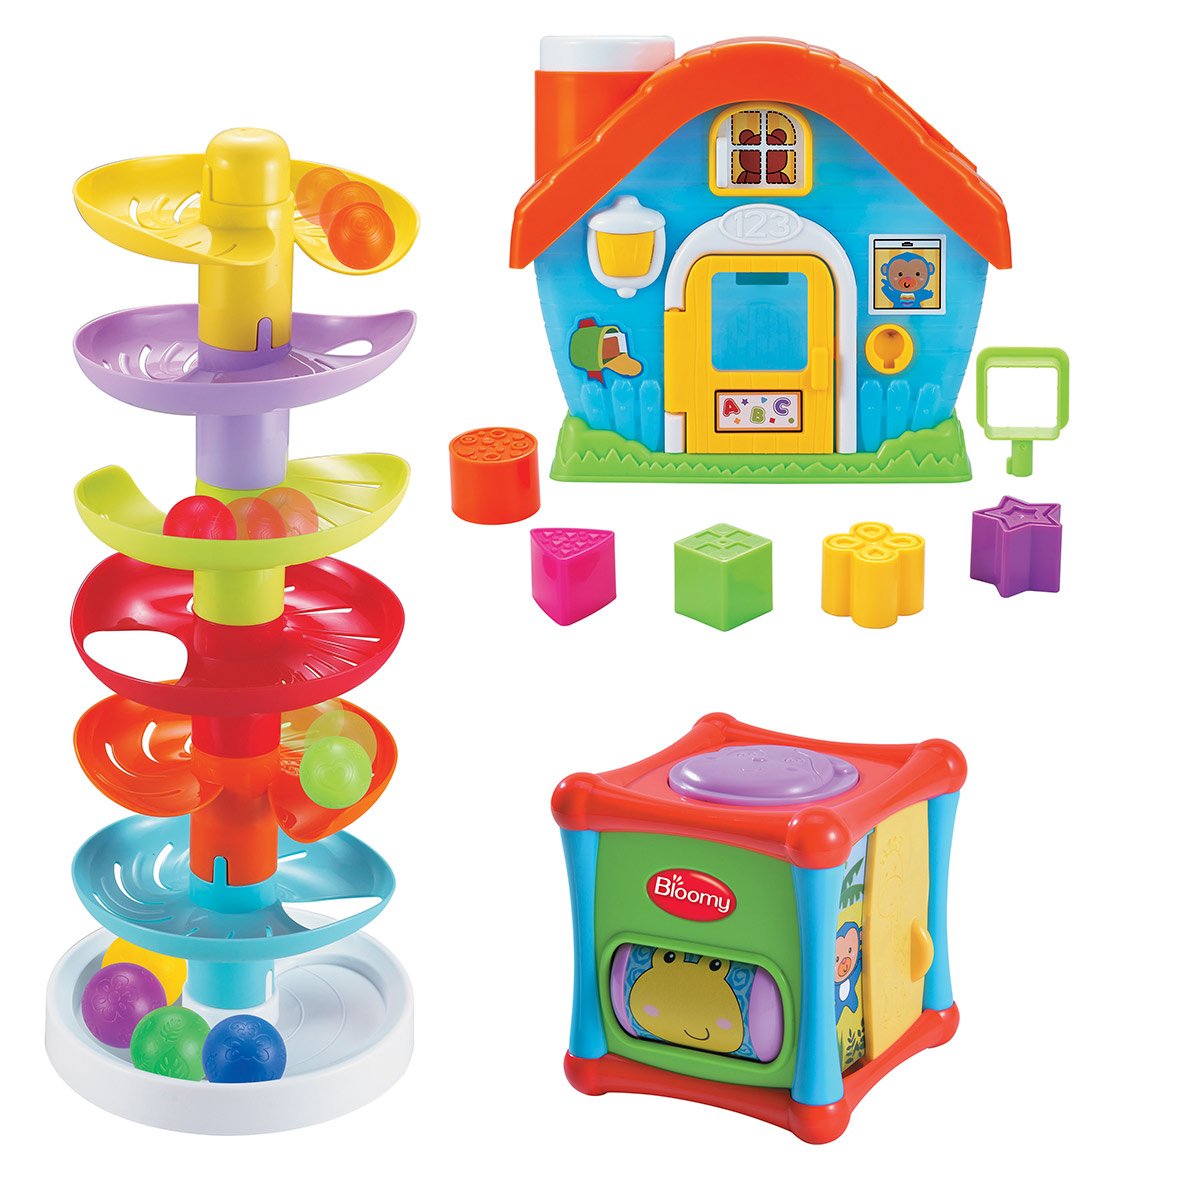 Le jouet simple - Coffret d'éveil avec trois jouets